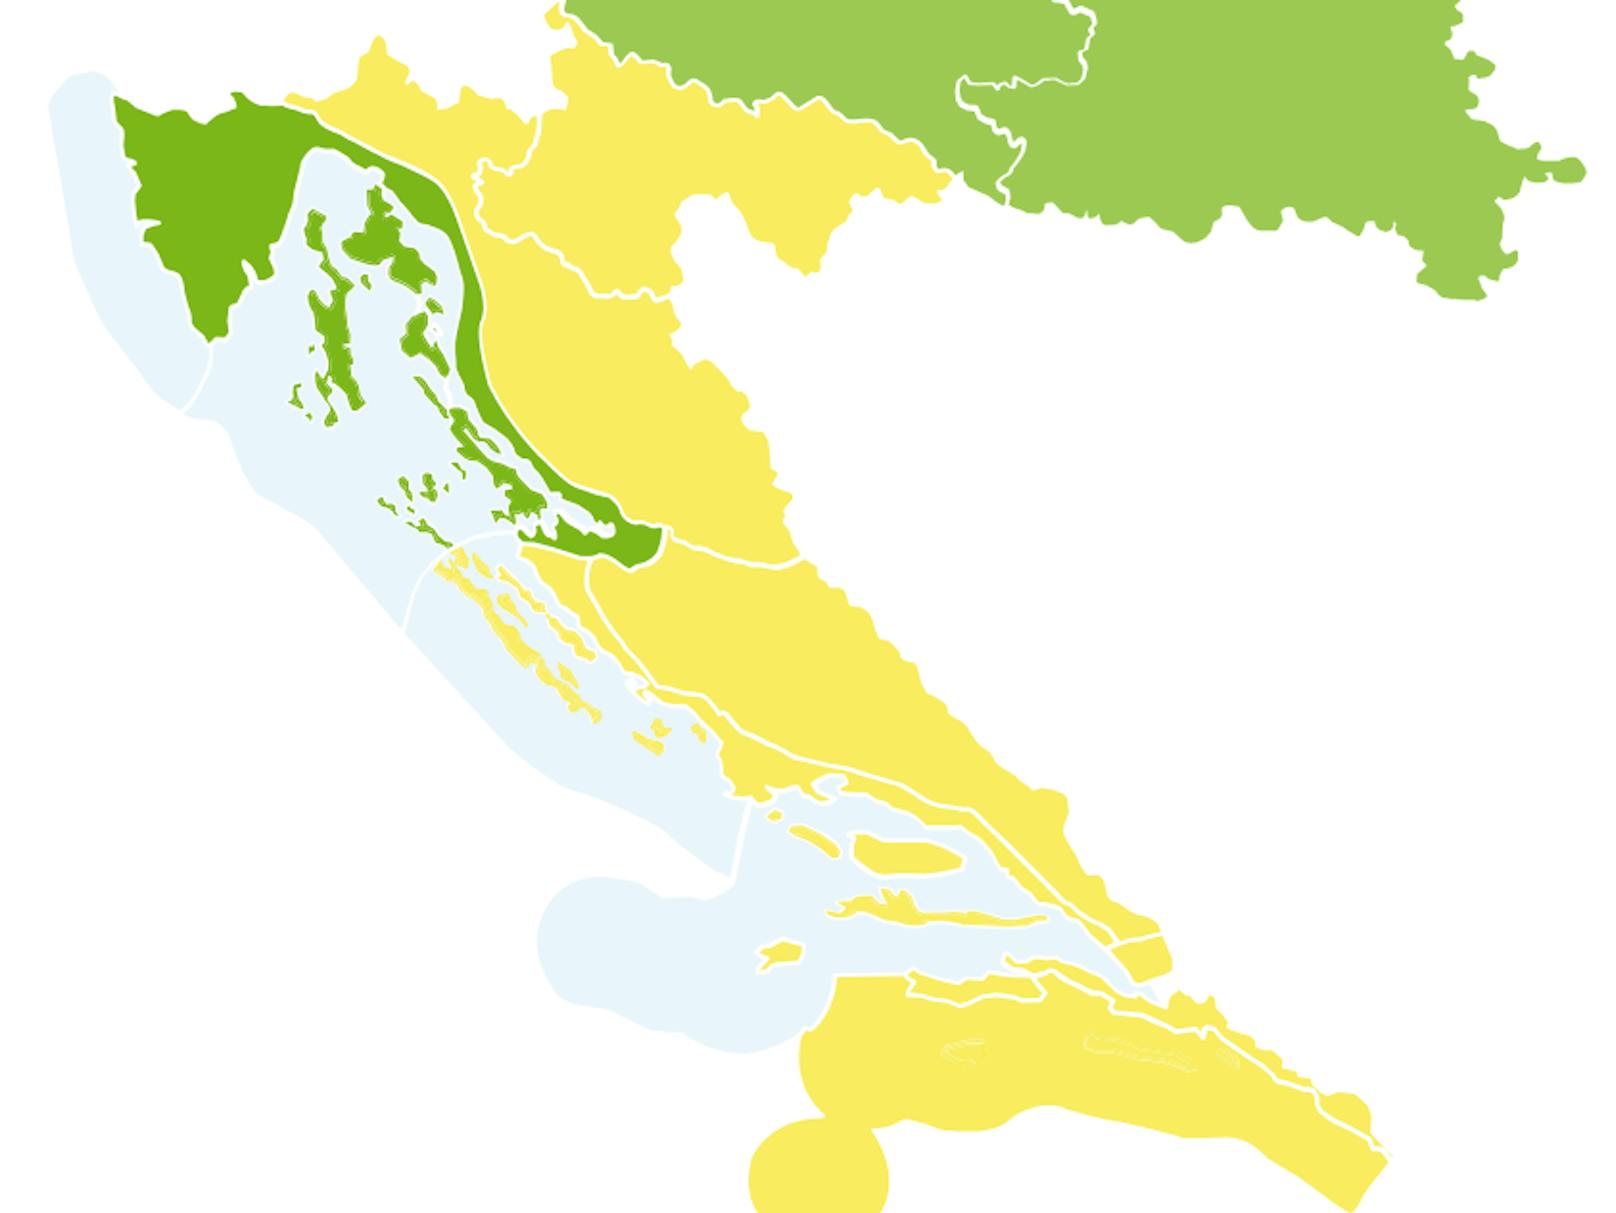 Warnstufe gelb in großen Teilen des Landes.